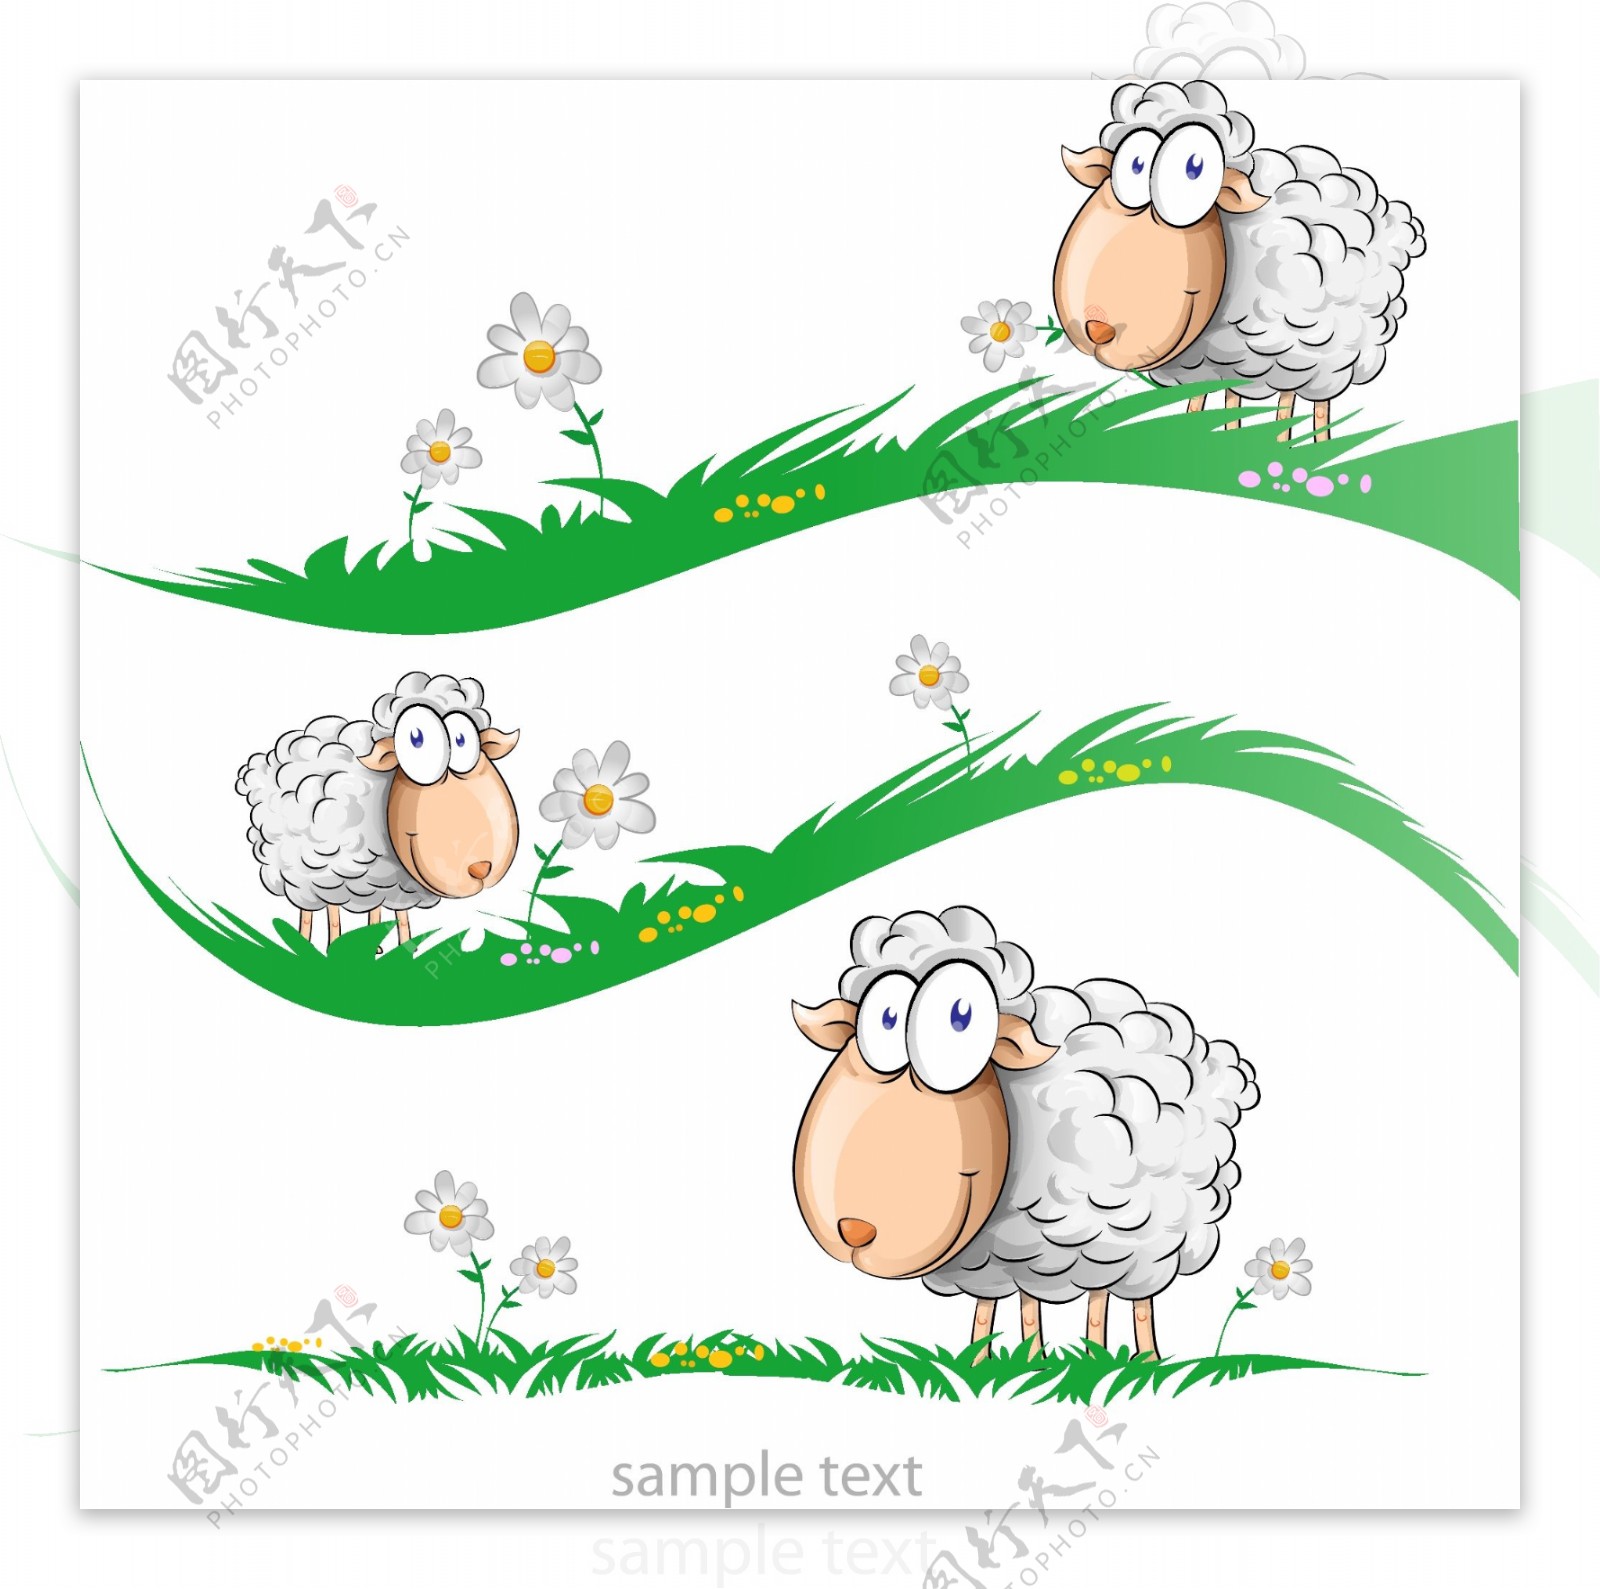 2015羊年素材羊年矢量素材图片